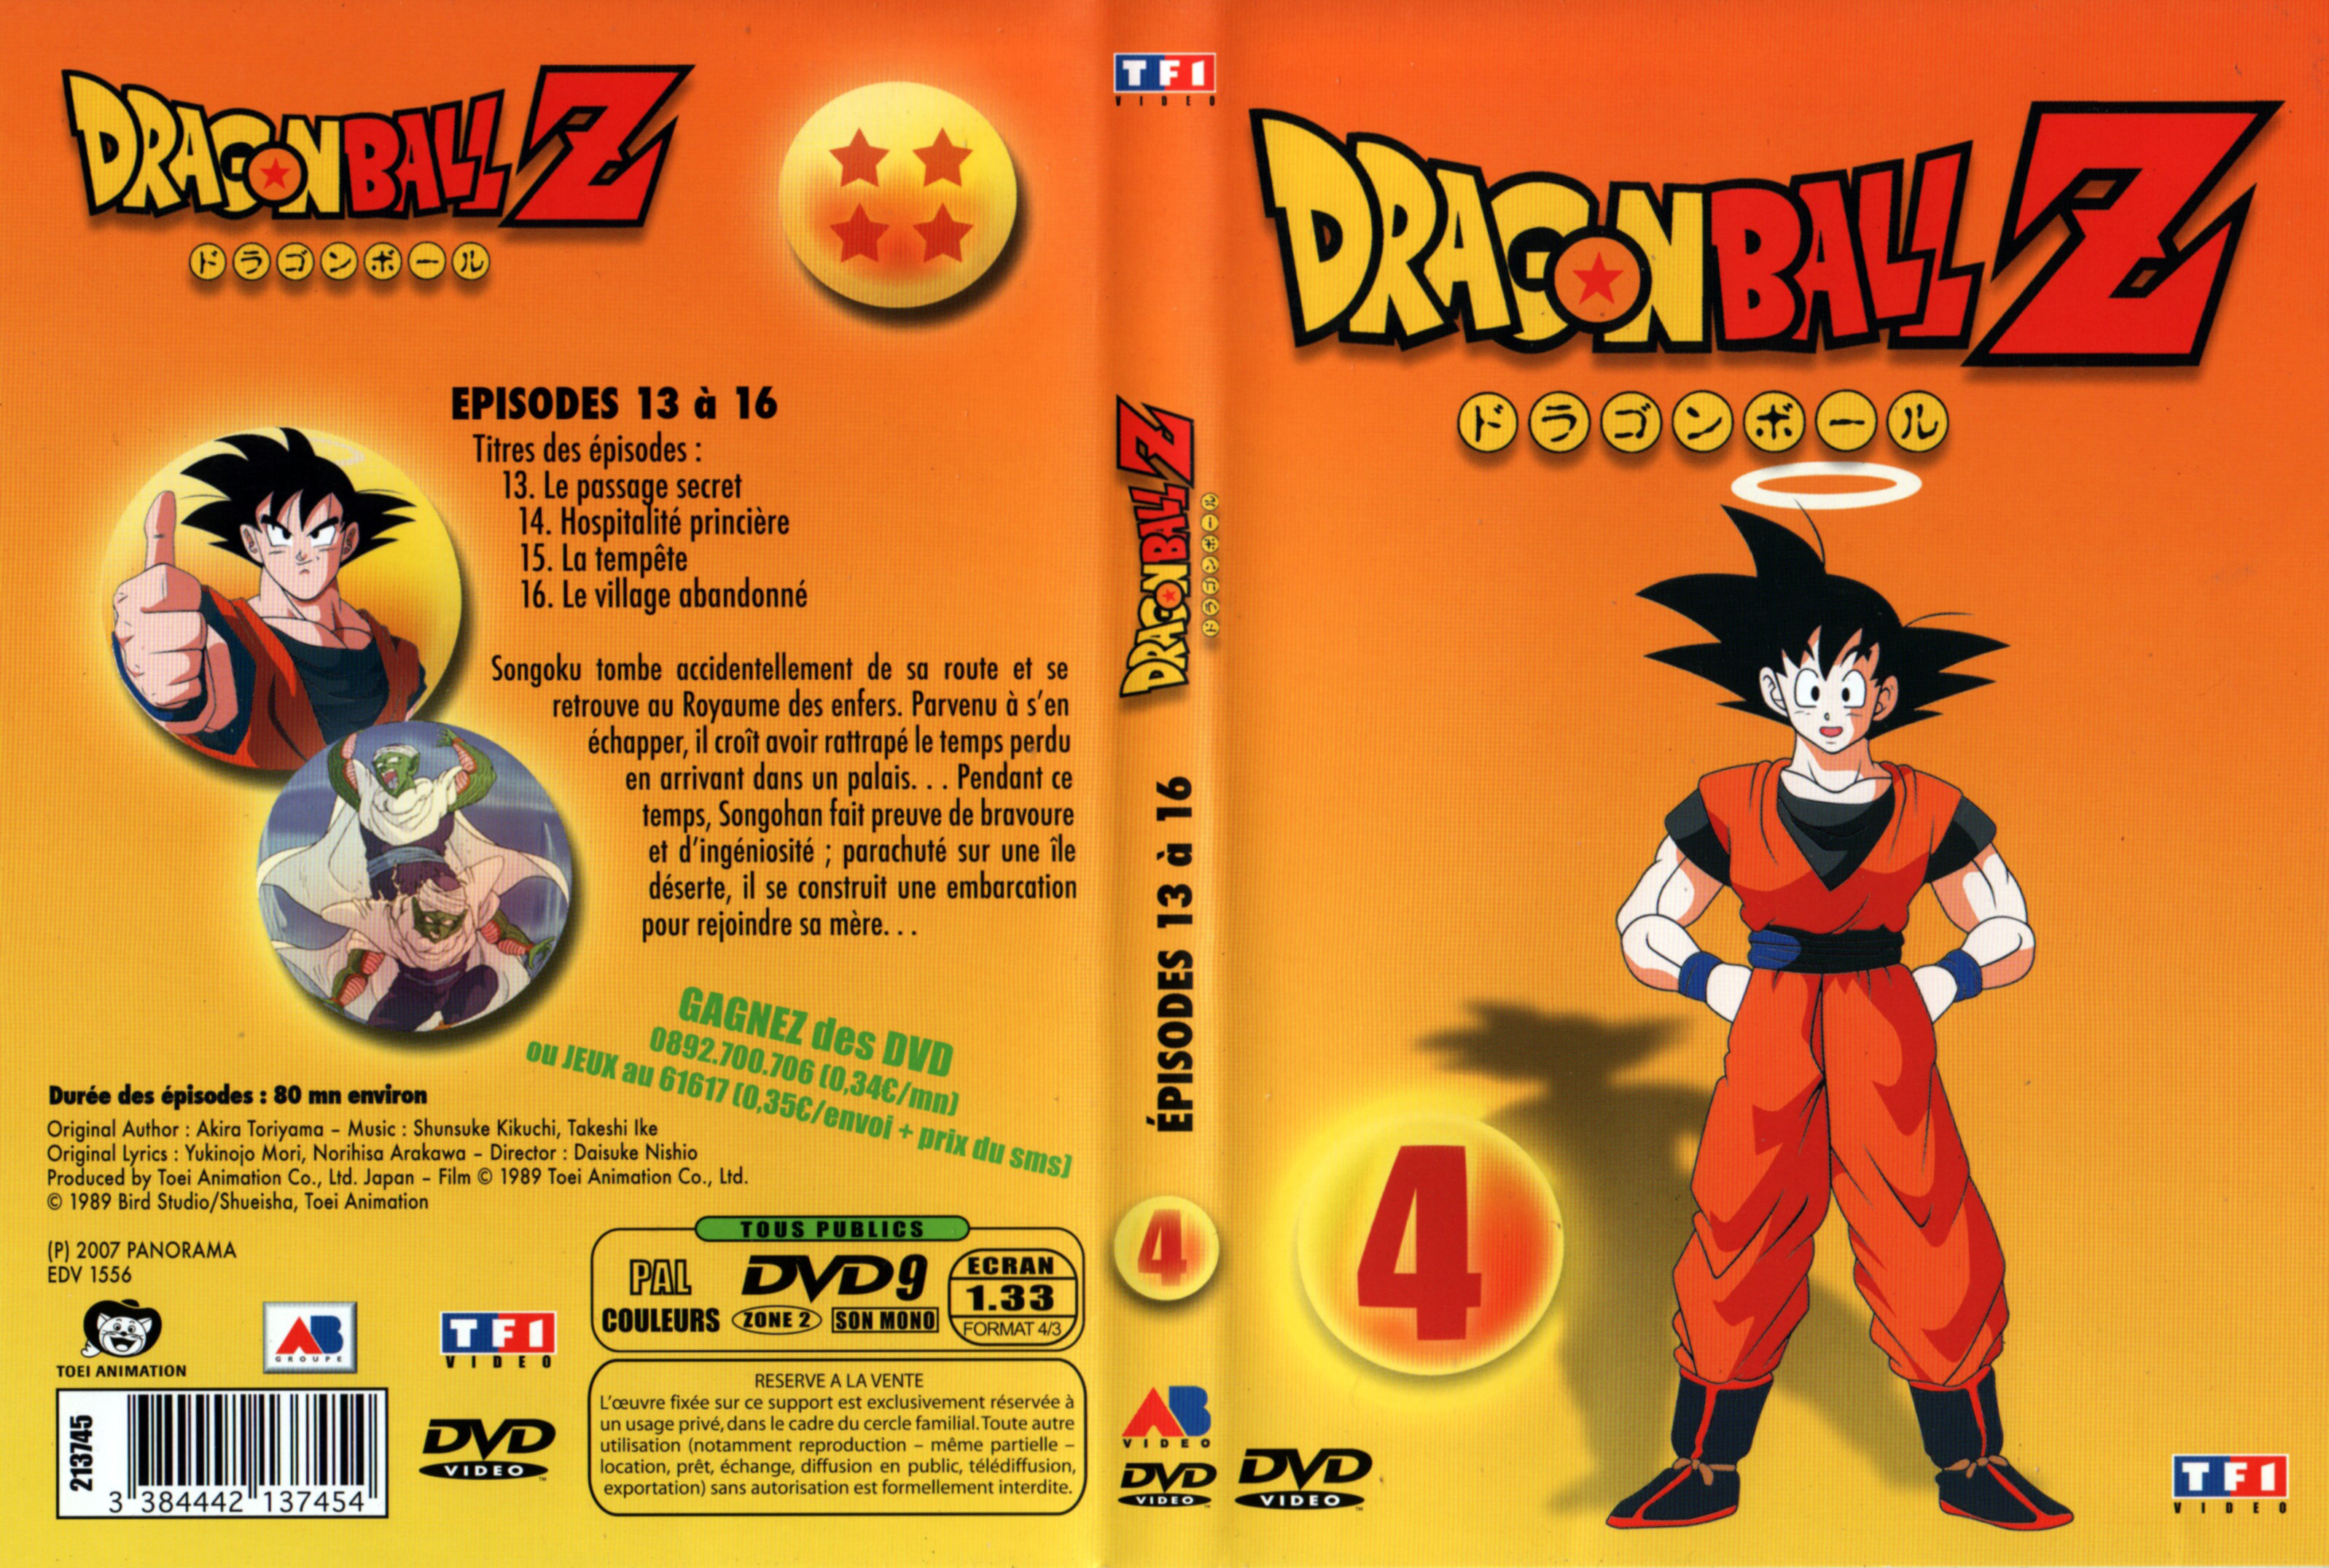 Jaquette DVD Dragon Ball Z vol 04 v2